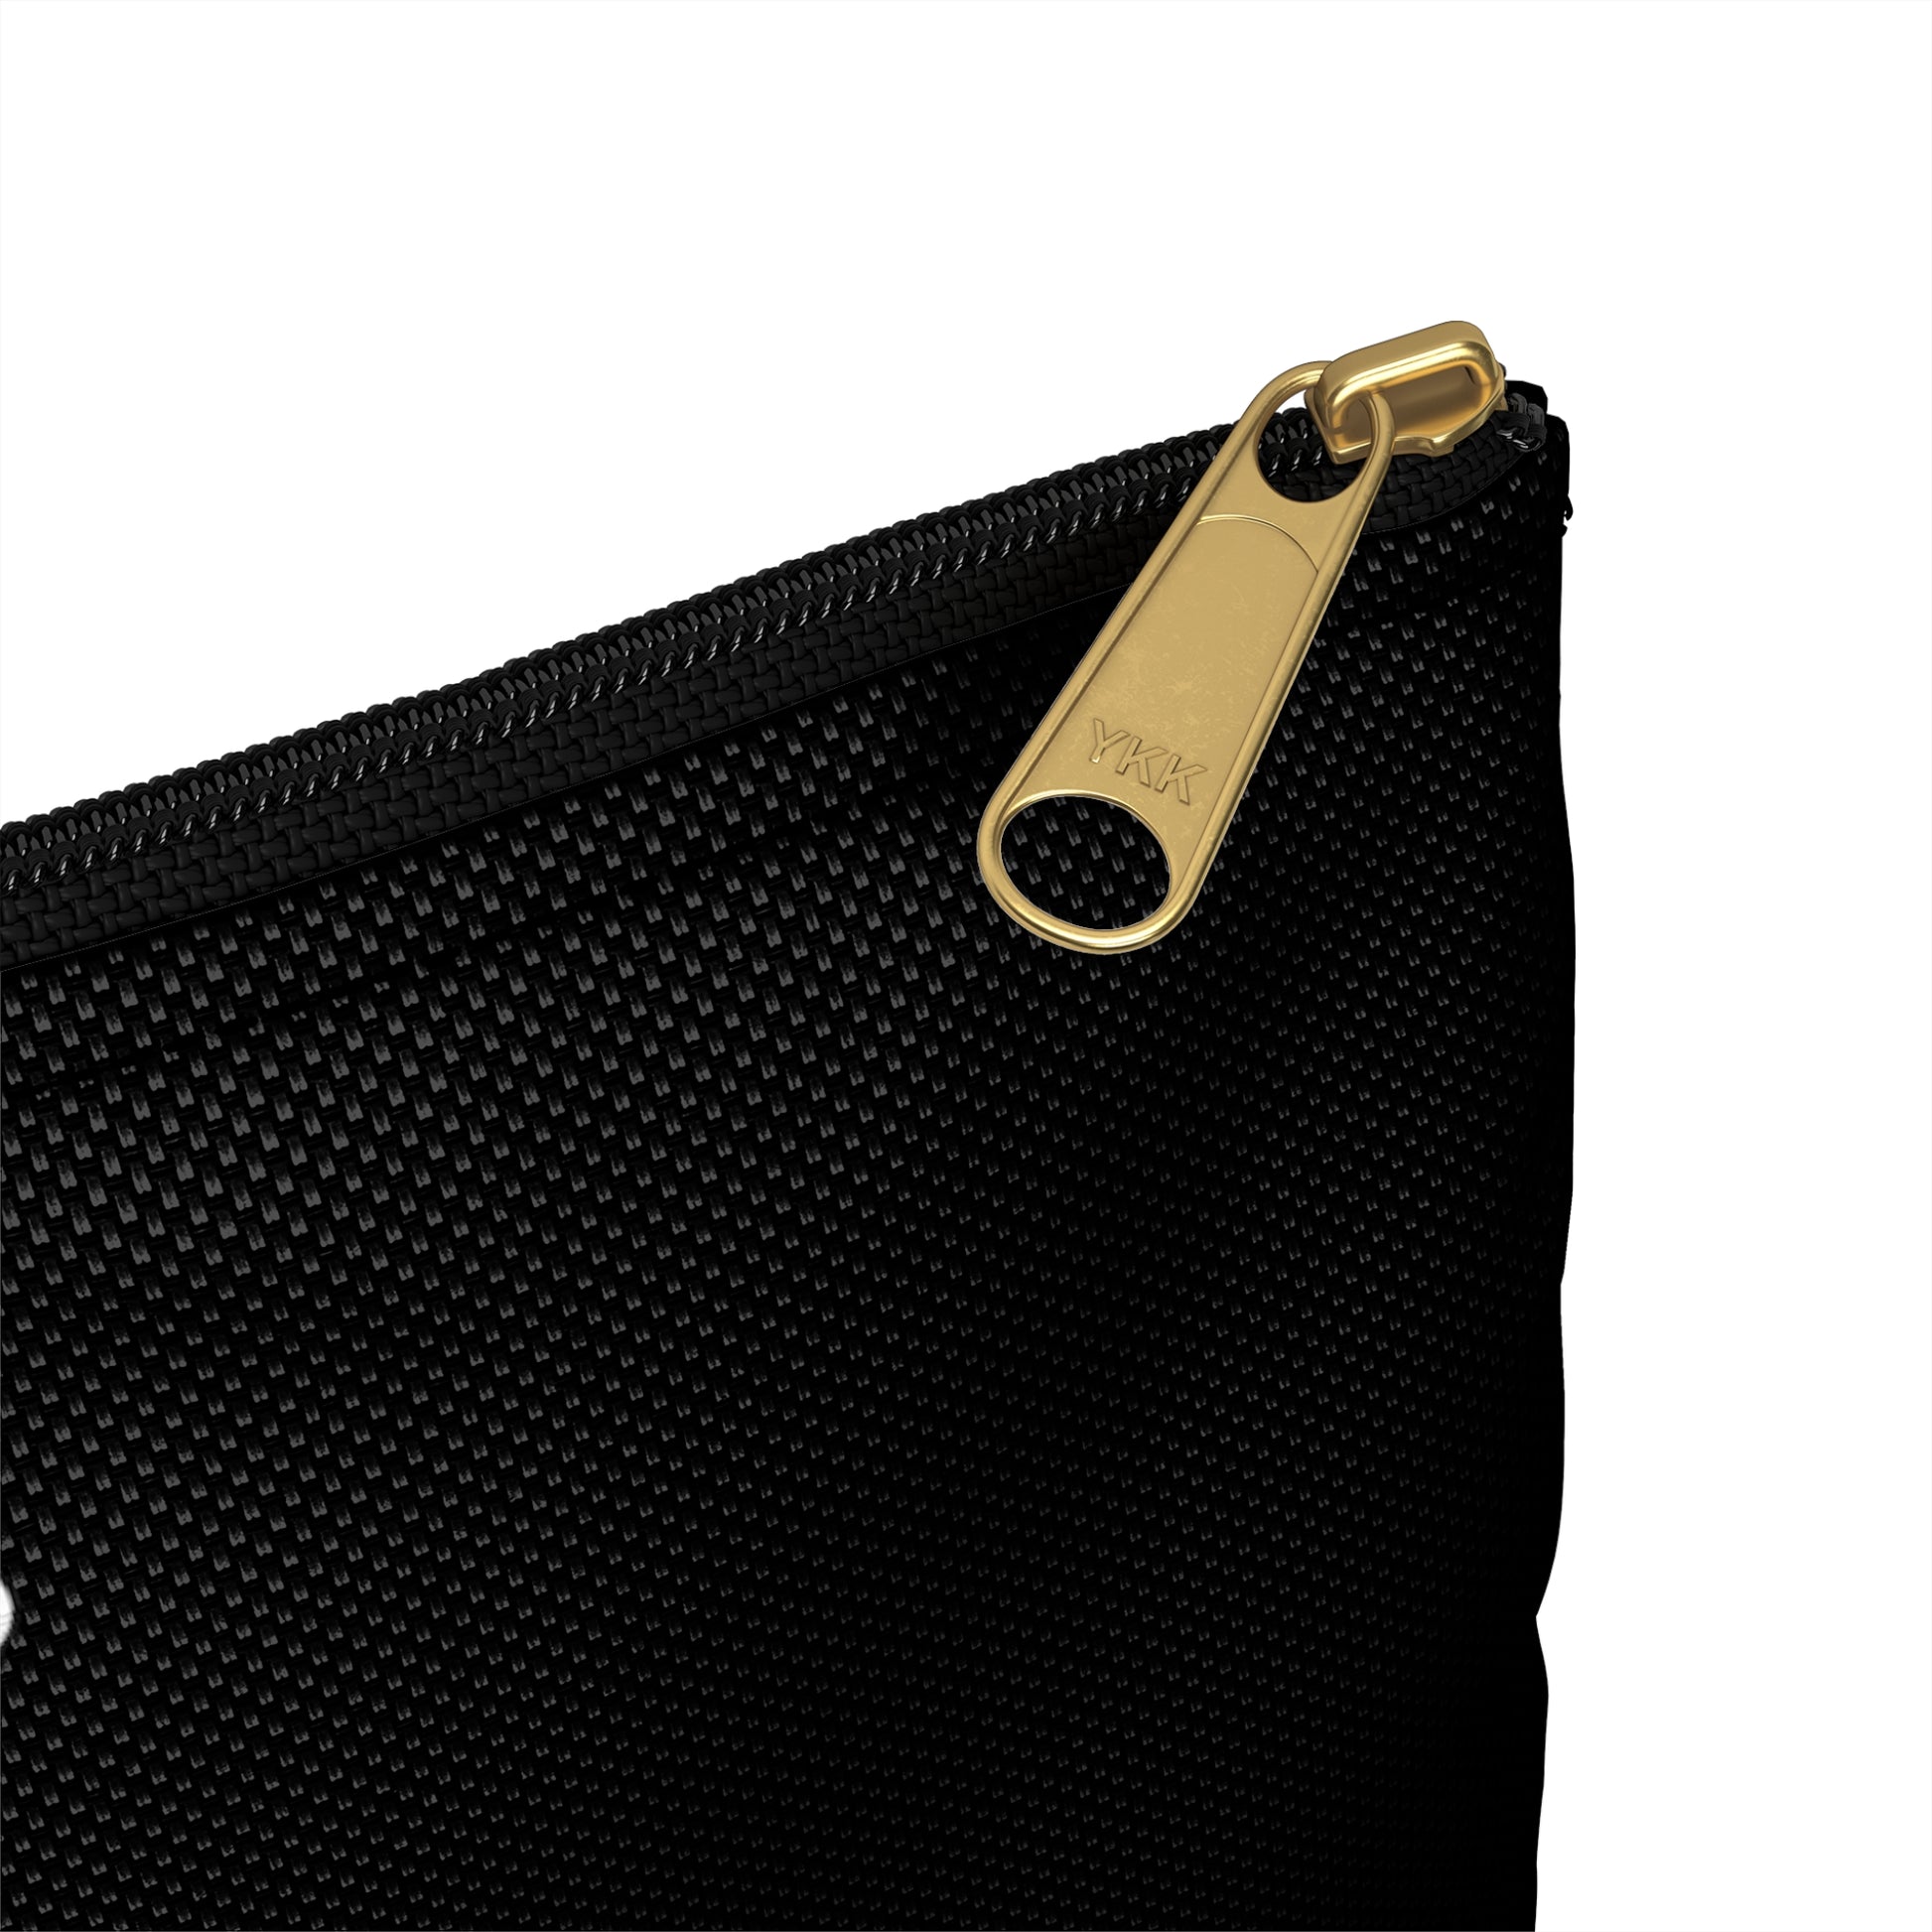 a close up of a zipper on a black bag